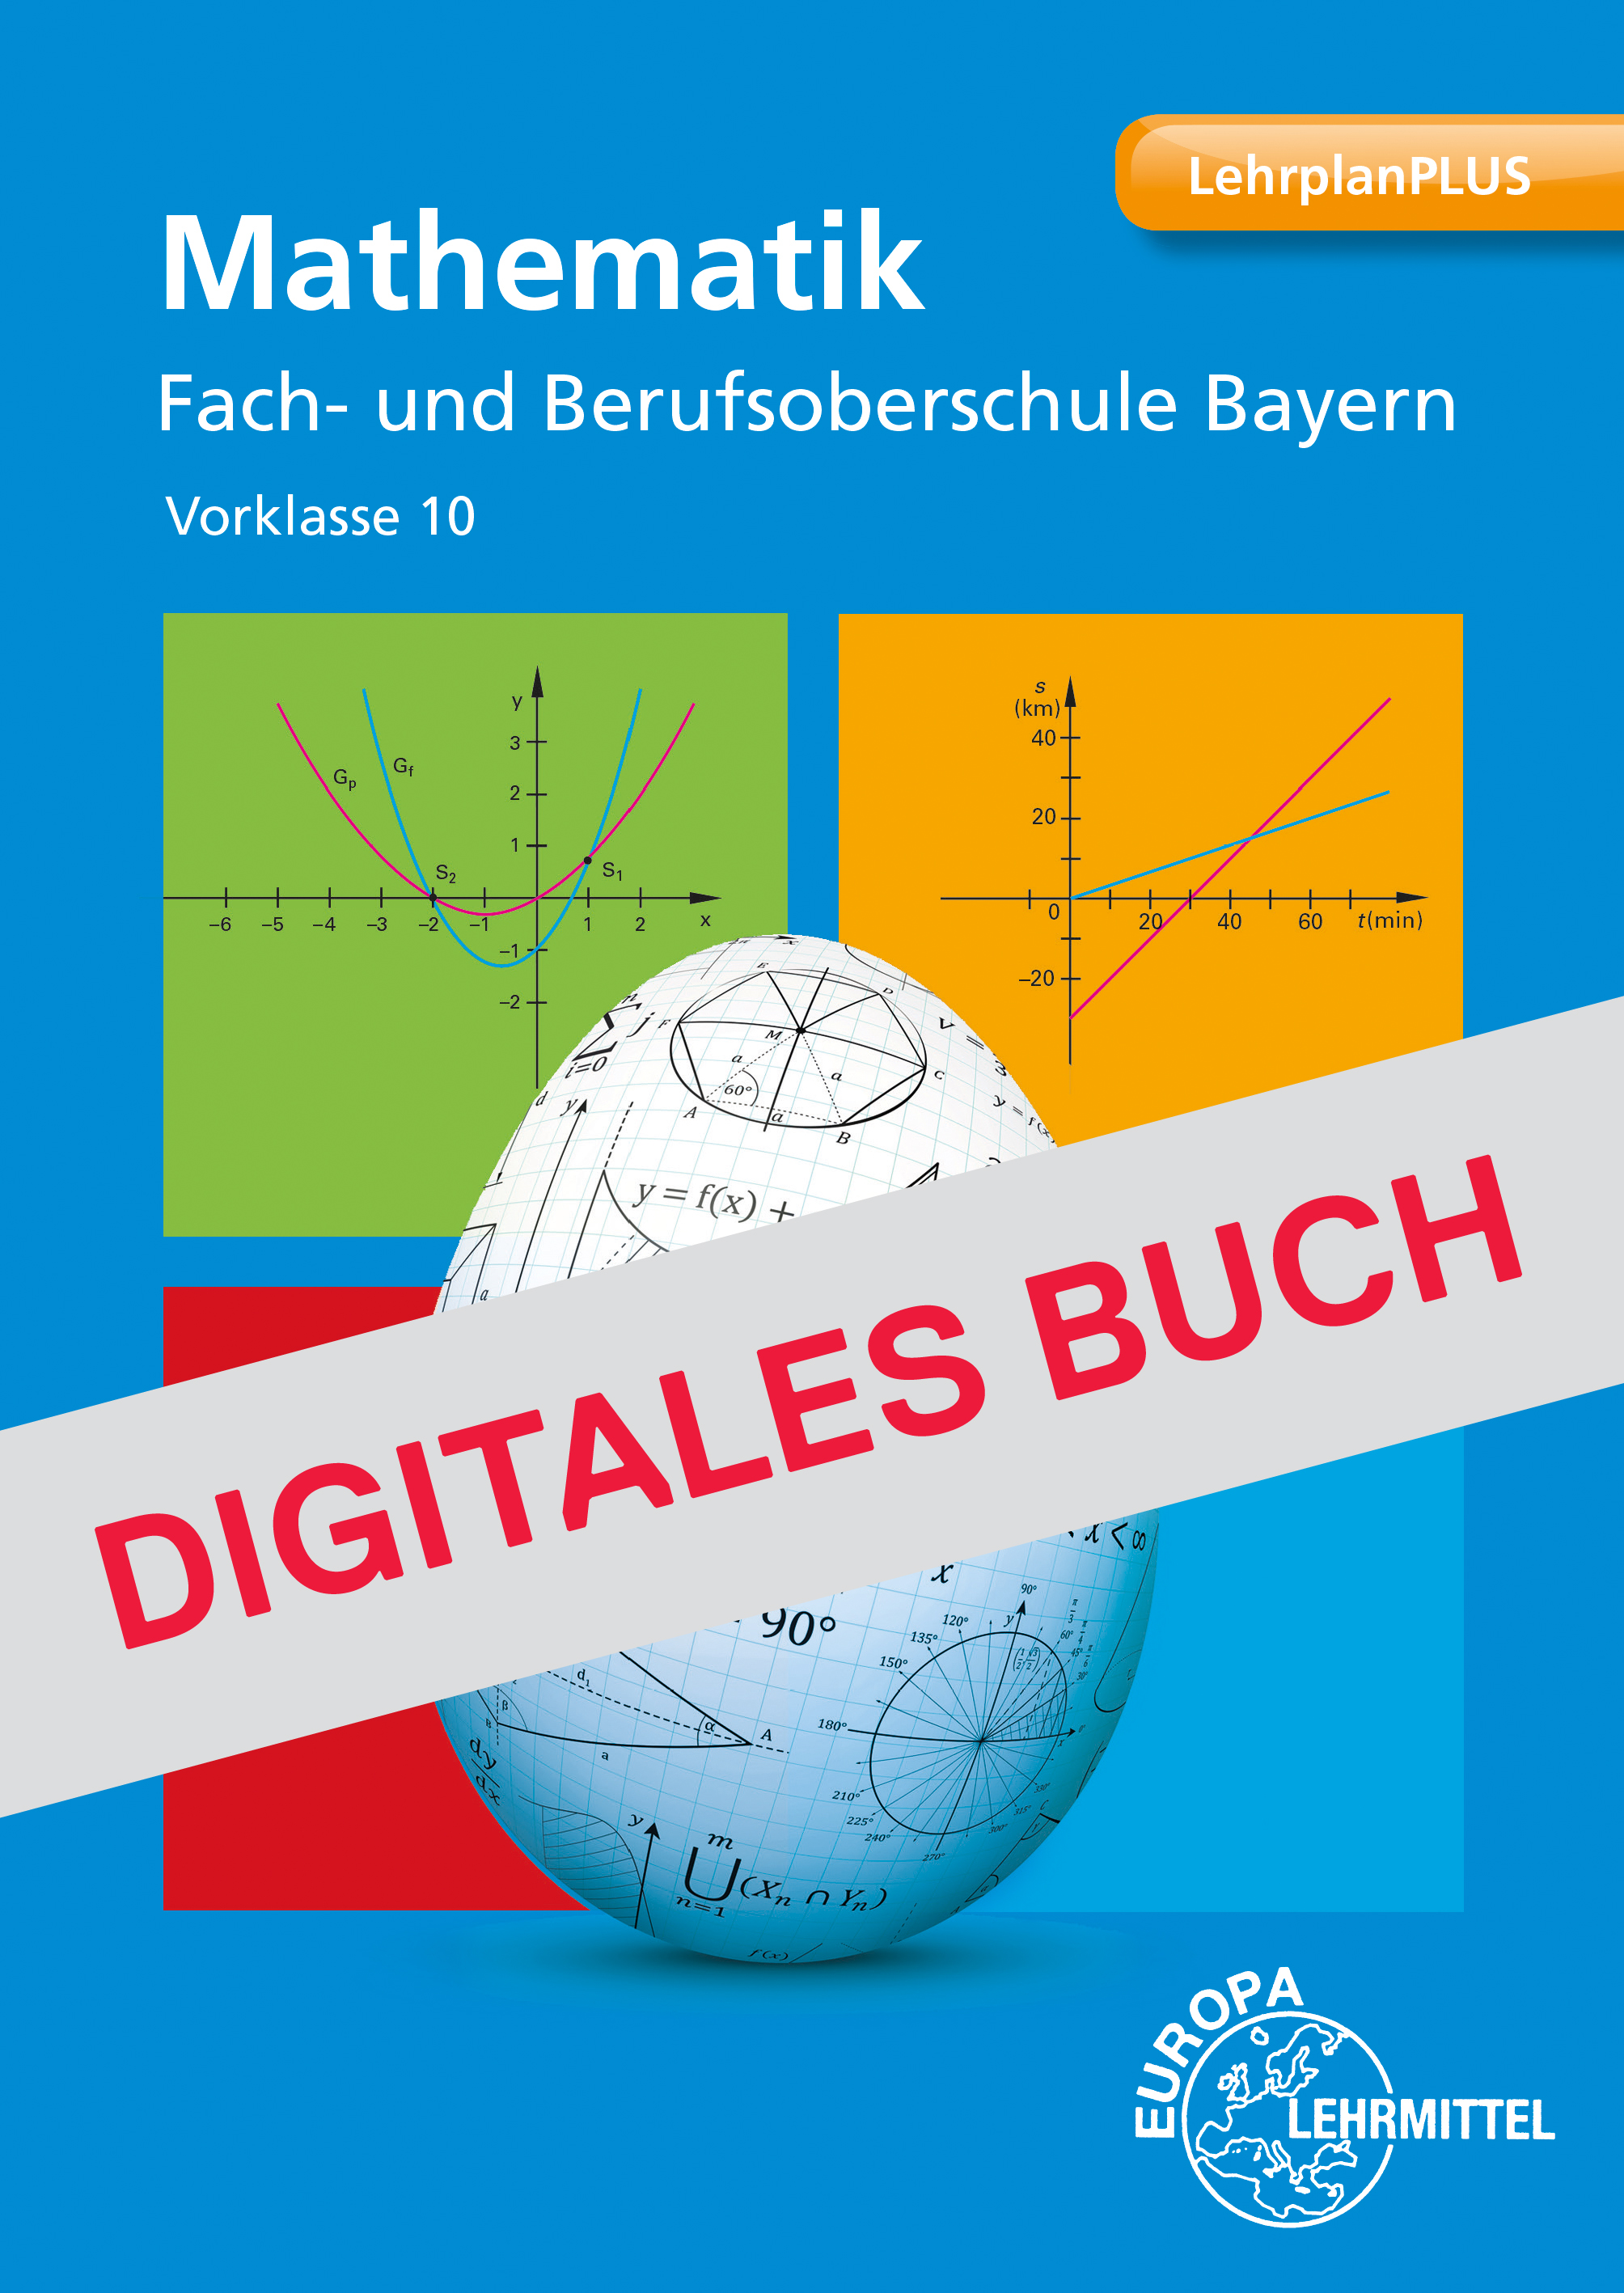 Mathematik Fach- und Berufsoberschule Bayern Vorklasse- Digitales Buch